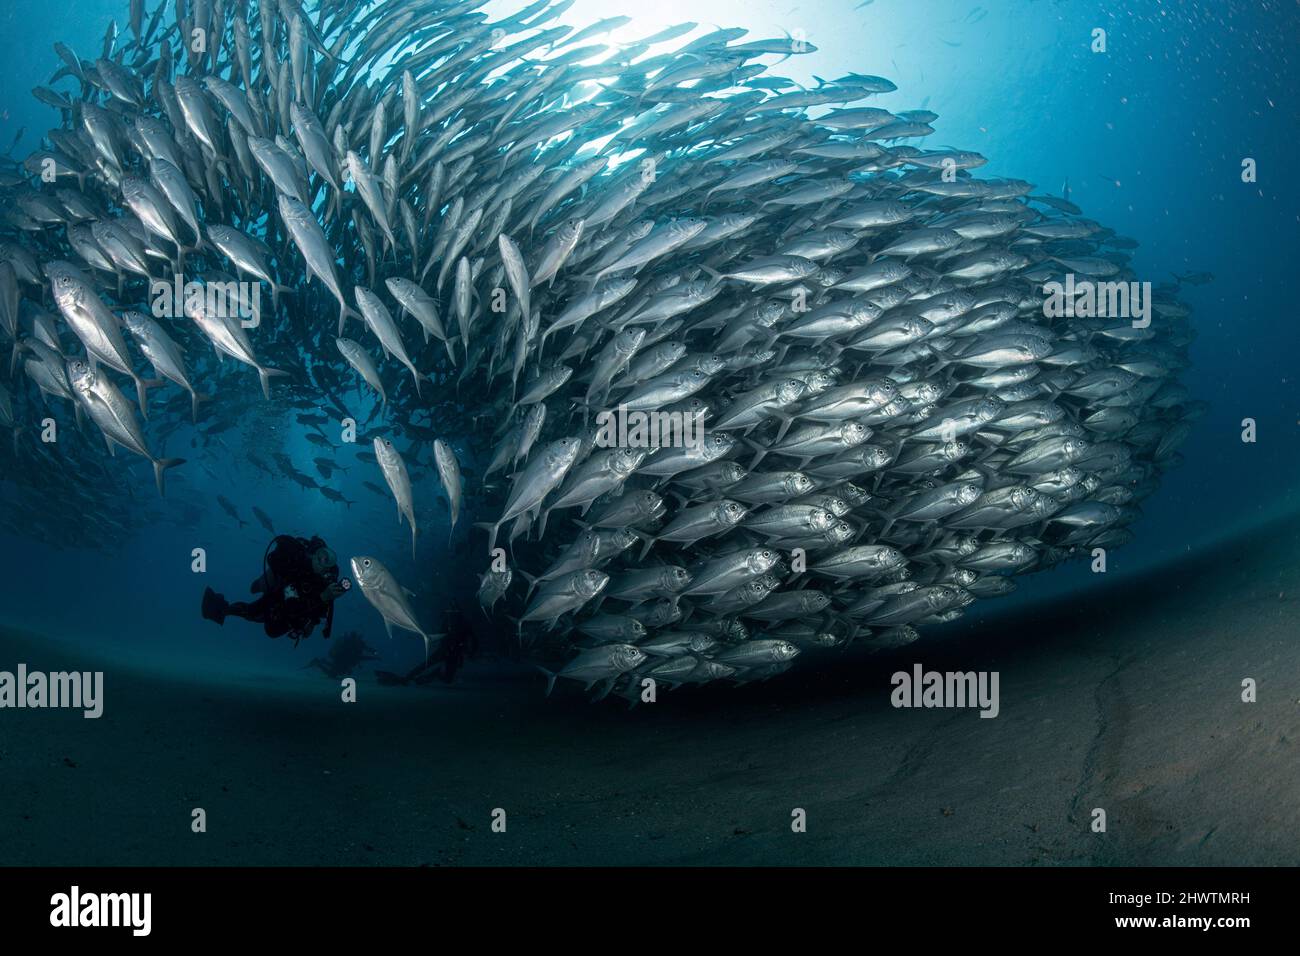 Ein Taucher bewundert in Ehrfurcht eine große Ansammlung von Bubenfischen in den Gewässern des Cabo Pulmo Marine National Park, wo die marine Biomasse exponentiell zugenommen hat Stockfoto